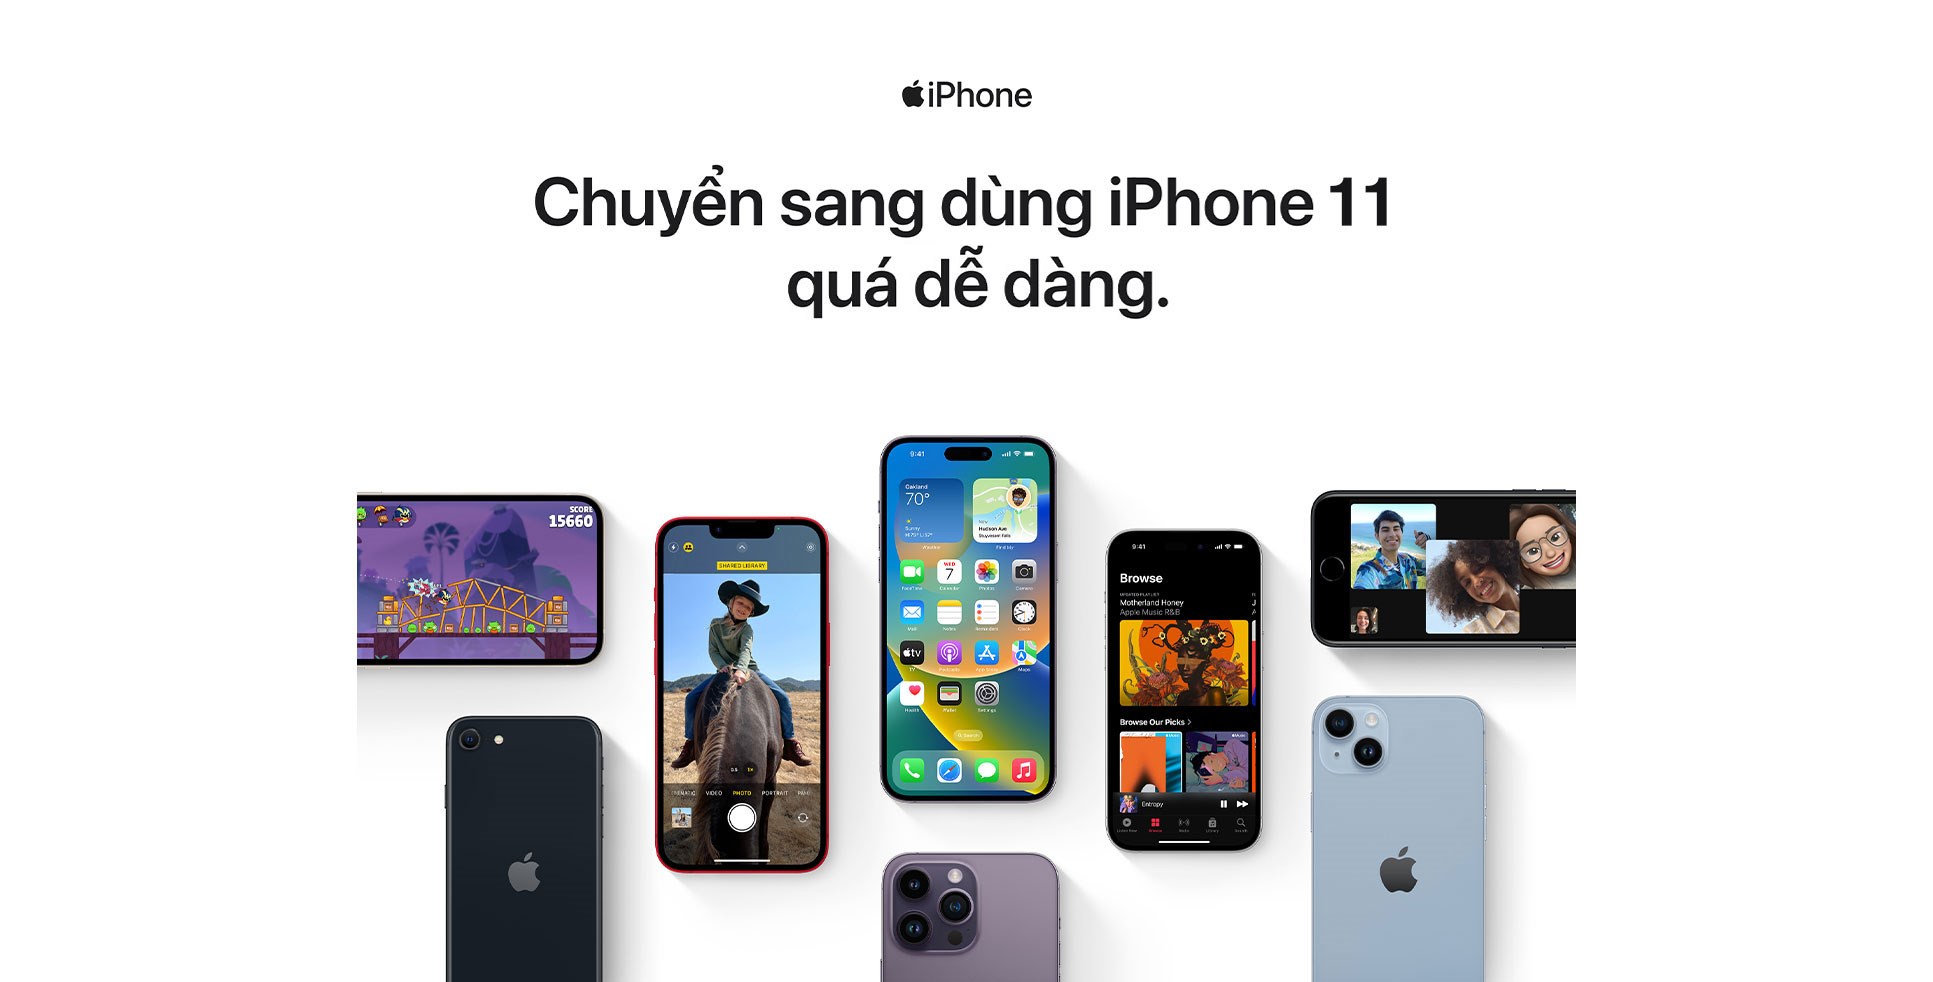 iPhone 11 chính hãng giá tốt: Sở hữu ngay chiếc iPhone 11 chính hãng với mức giá cực tốt, bạn sẽ có thêm nhiều lựa chọn trong việc sử dụng điện thoại thông minh. Với camera đỉnh cao, hiệu năng ổn định và thiết kế tinh tế, iPhone 11 sẽ giúp bạn trải nghiệm những tính năng công nghệ đặc sắc và thời lượng pin lâu dài.